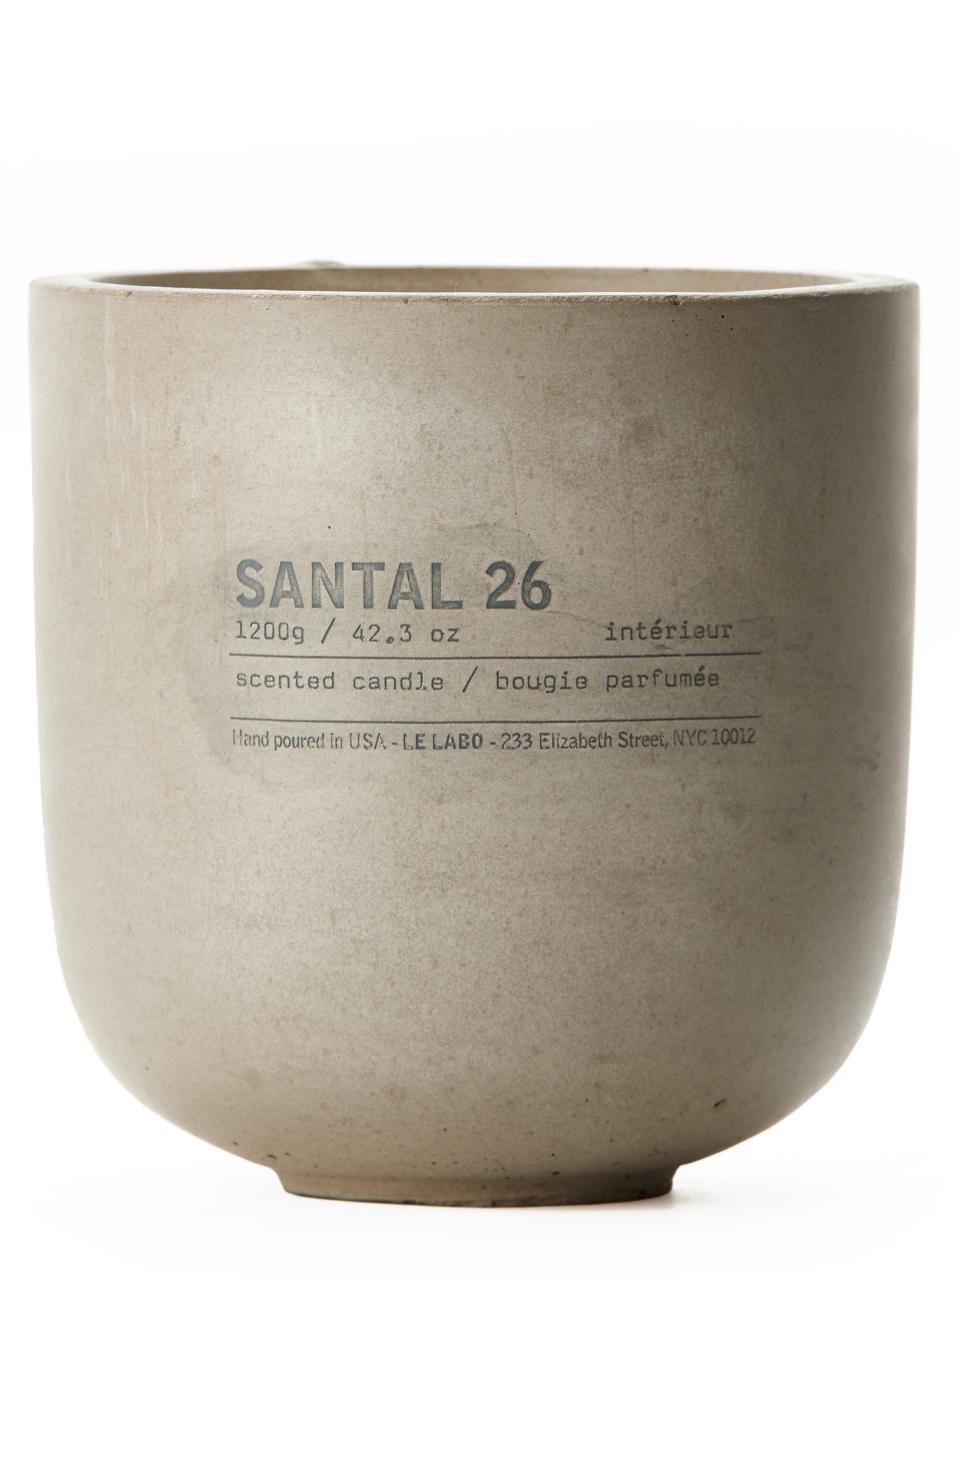 1) Santal 26 Concrete Candle